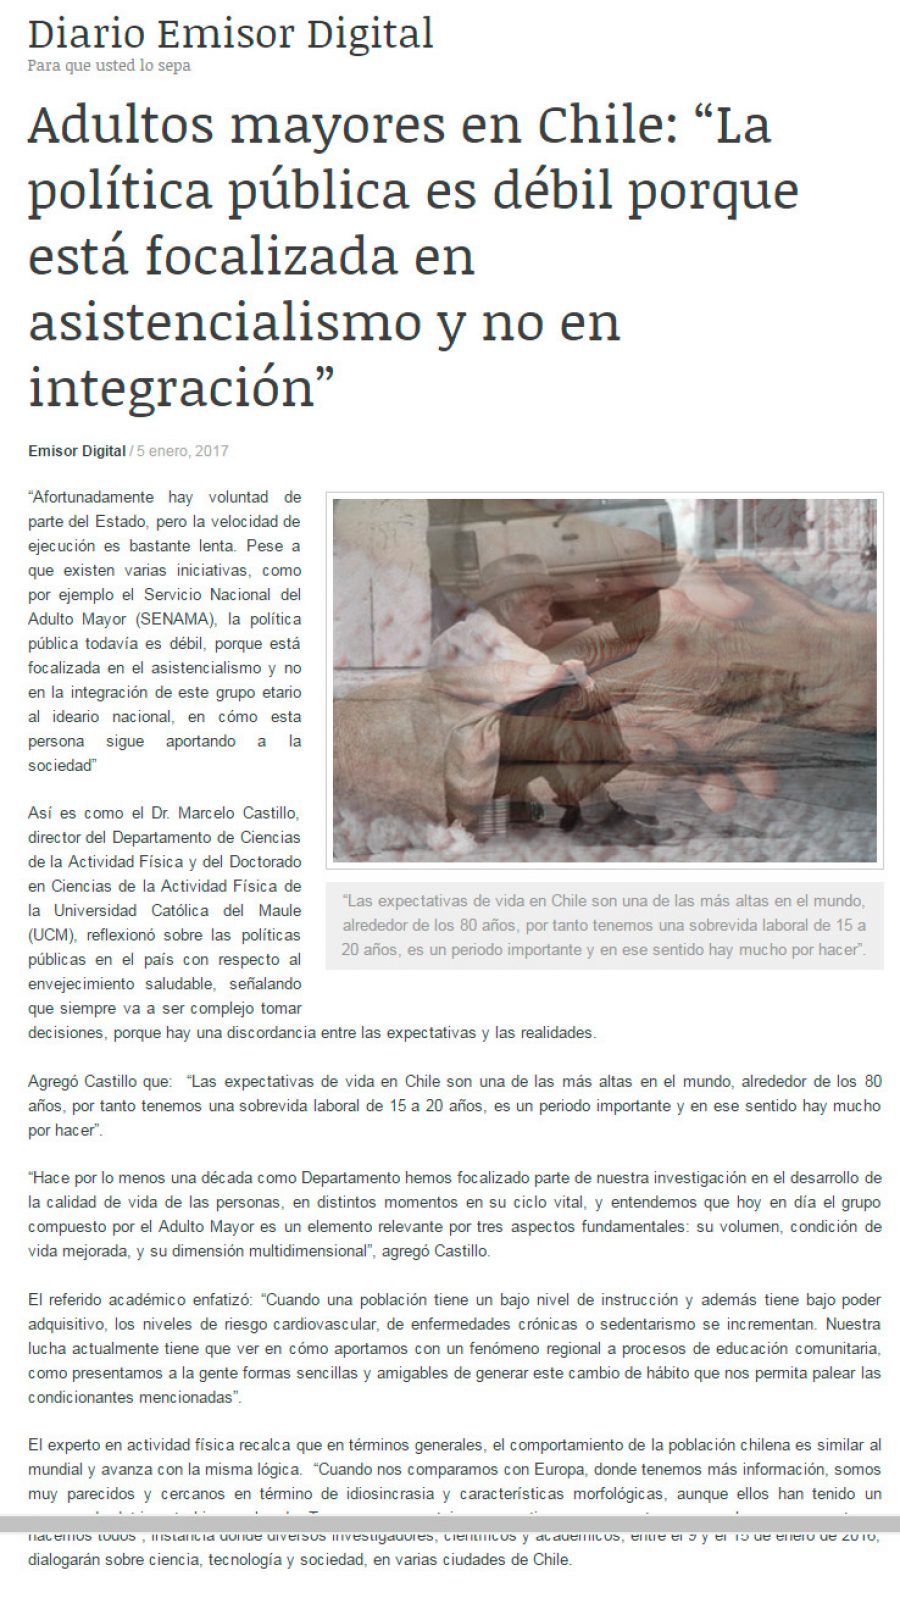 06 de enero 2017 en Emisora Digital: “Adultos mayores en Chile: “La política pública es débil porque está focalizada en asistencialismo y no en integración”